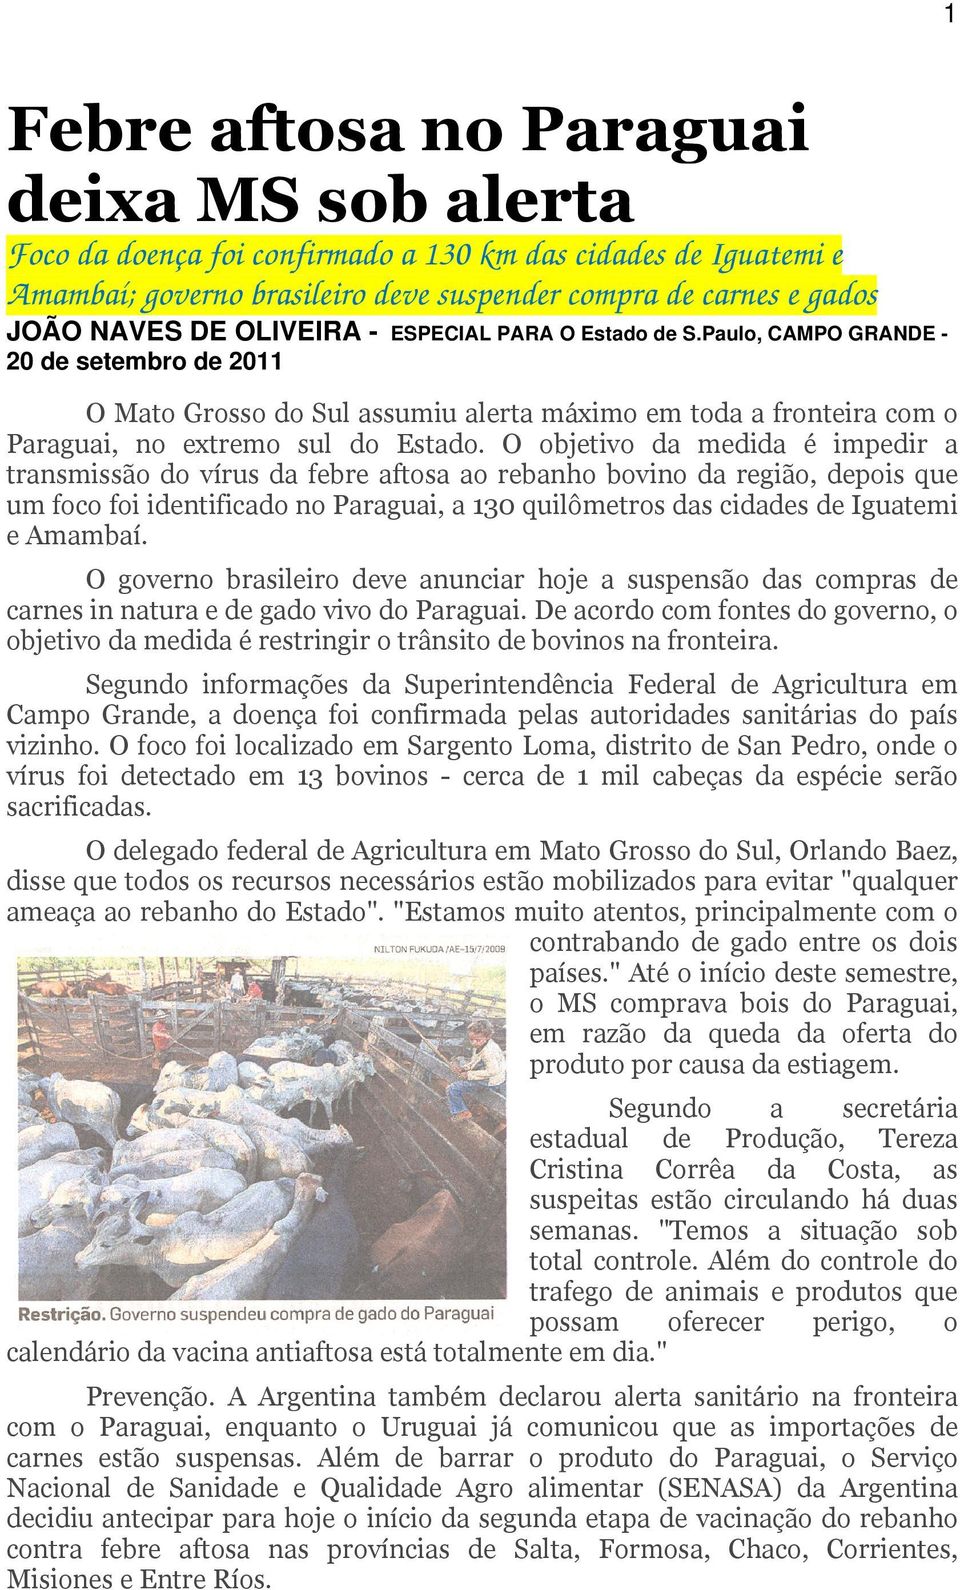 O objetivo da medida é impedir a transmissão do vírus da febre aftosa ao rebanho bovino da região, depois que um foco foi identificado no Paraguai, a 130 quilômetros das cidades de Iguatemi e Amambaí.